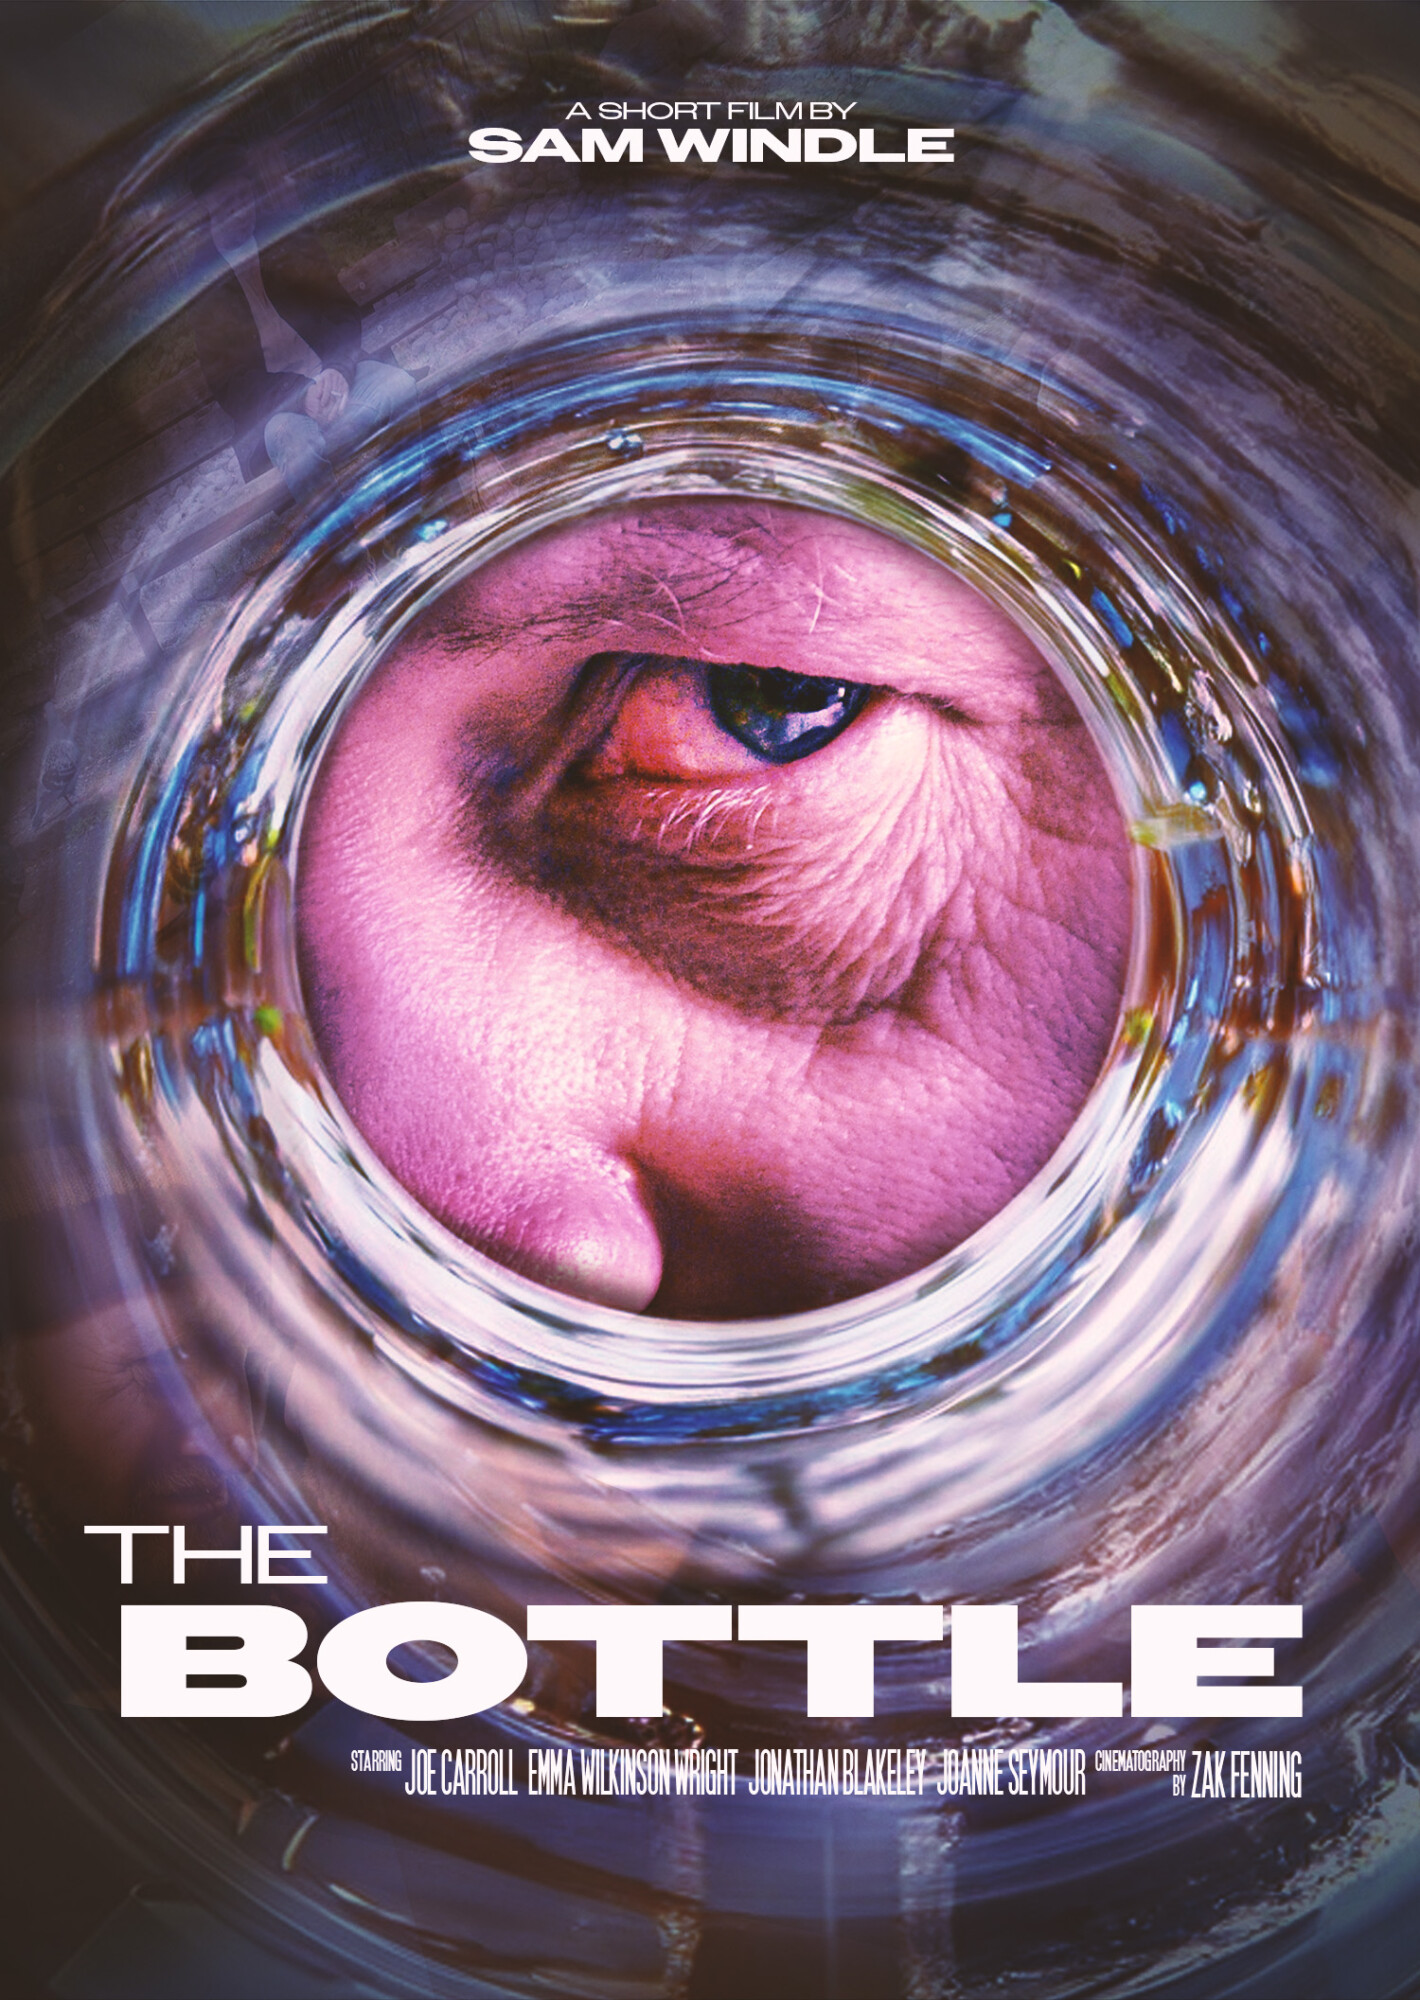 The Bottle